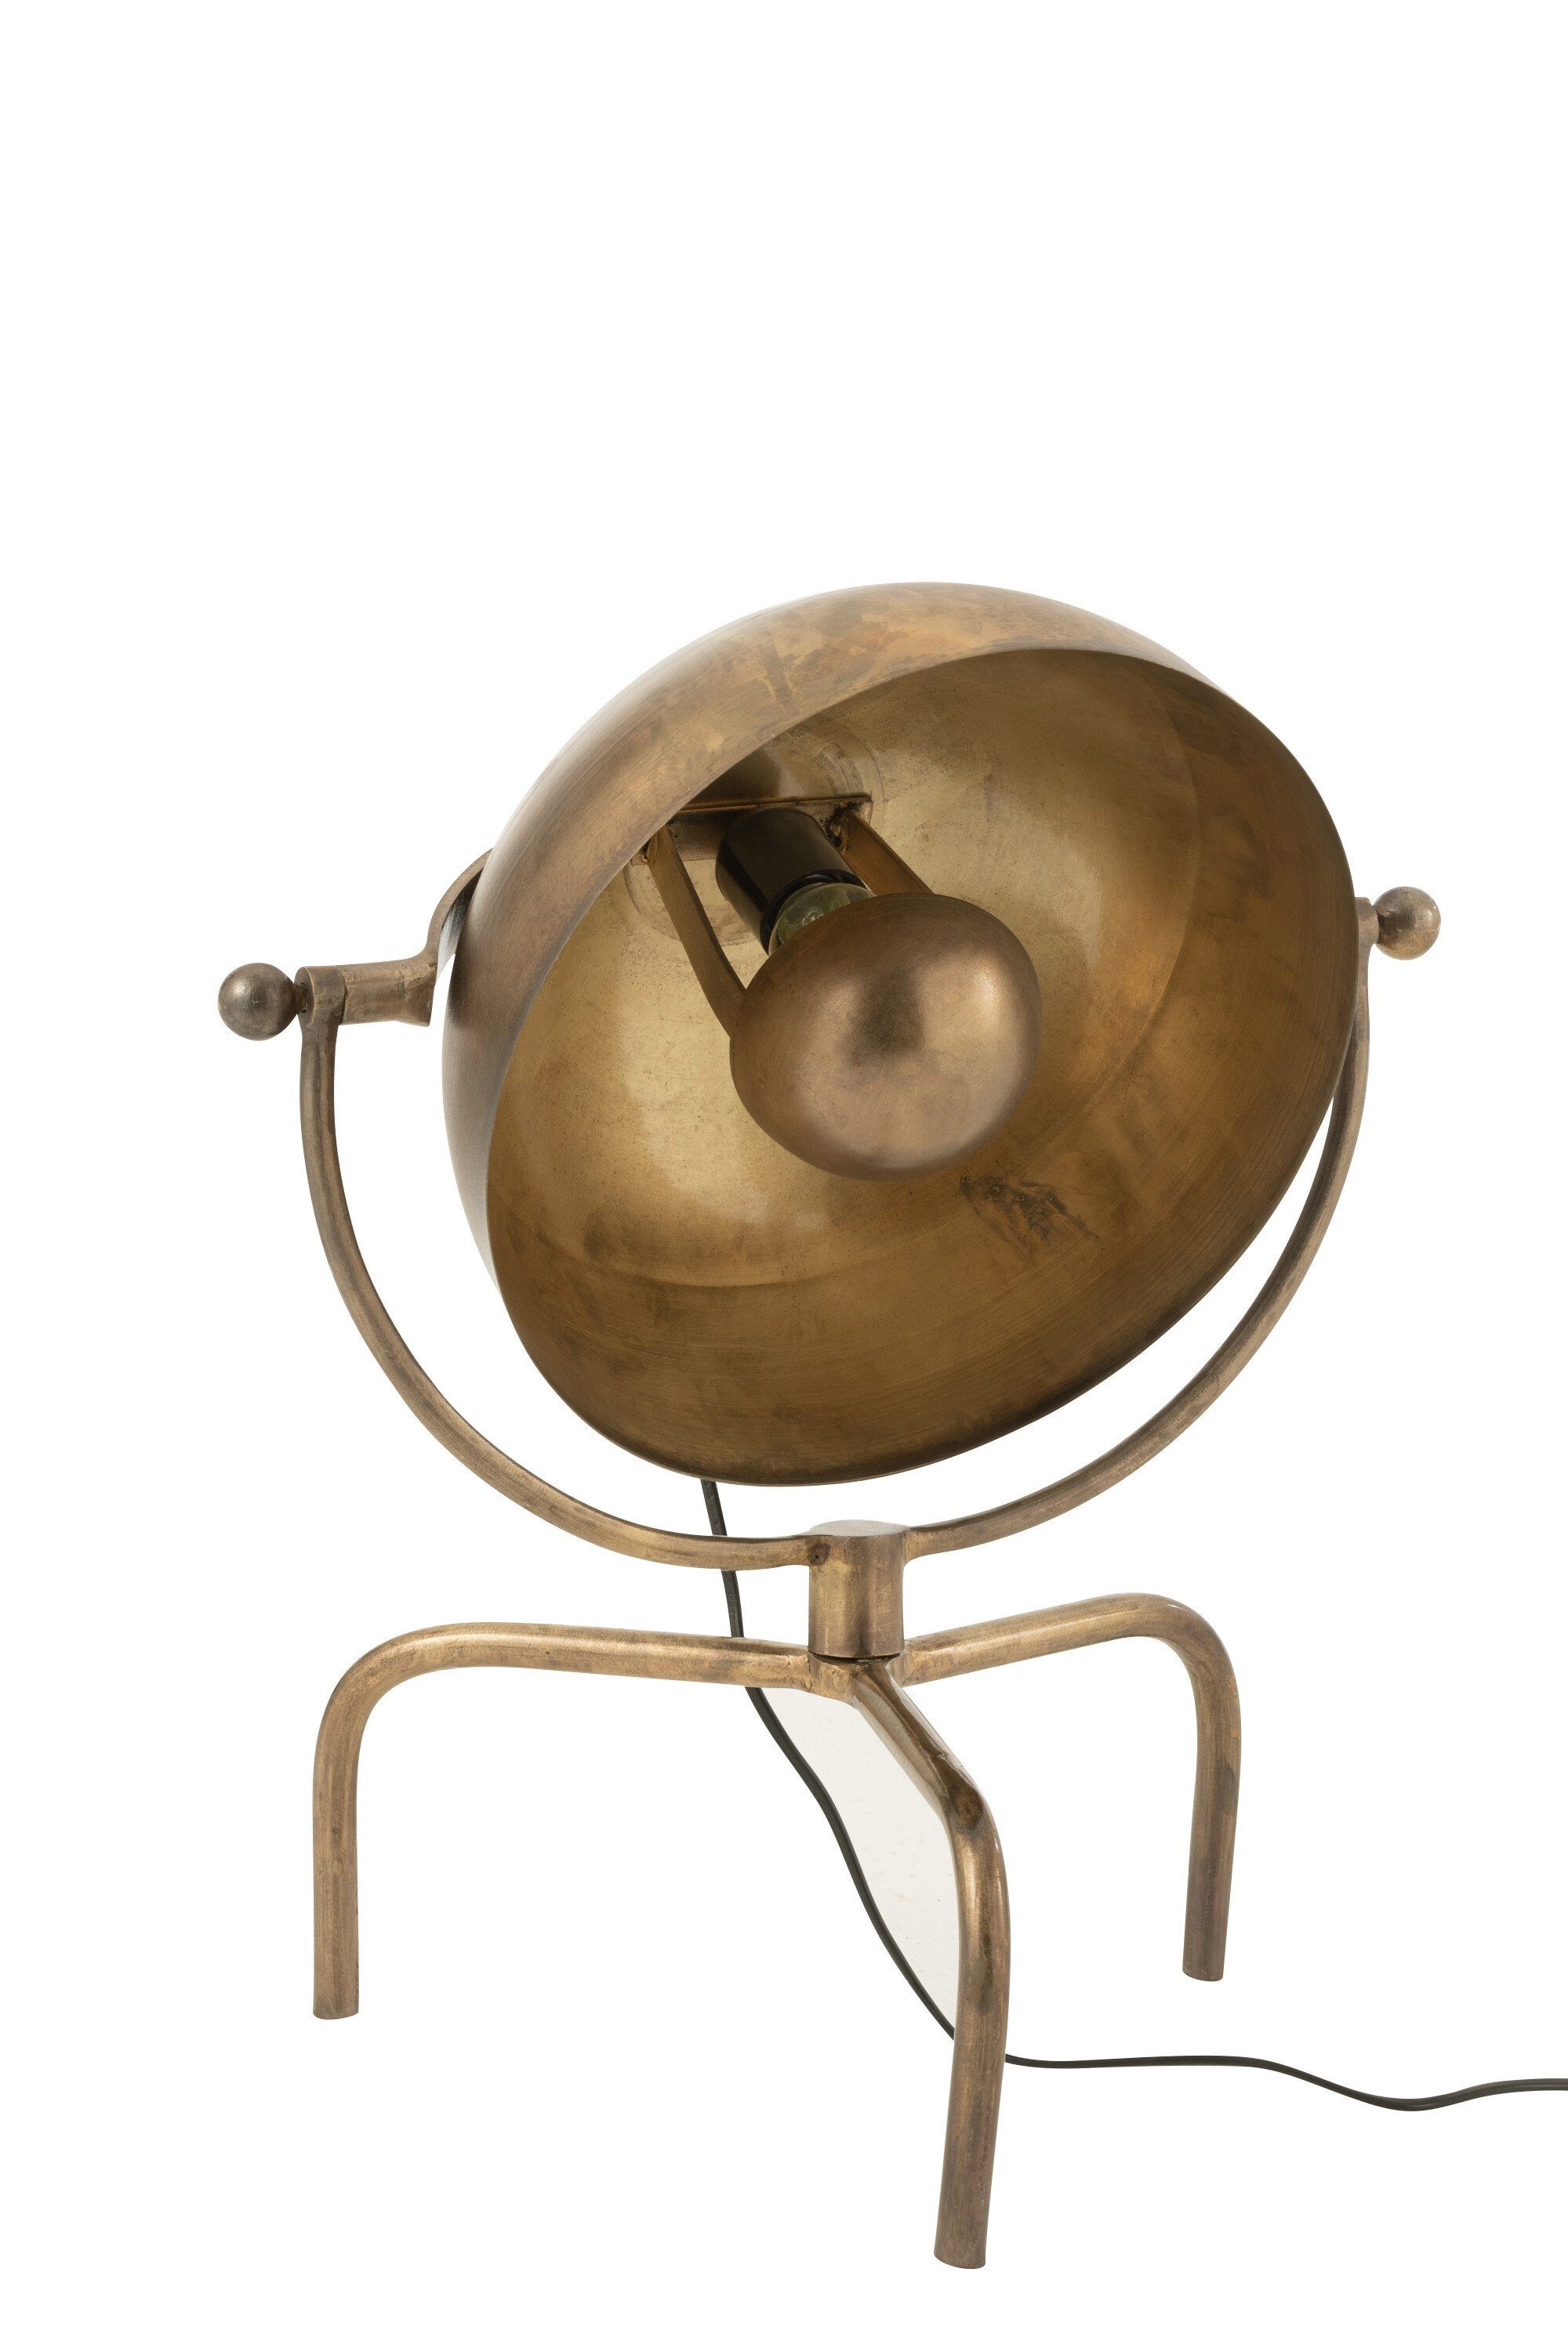 J-line Dekoobjekt Exquisite Antike Tischlampe - Erhältlich in stilvollem Eisen-Kupfer od bronze